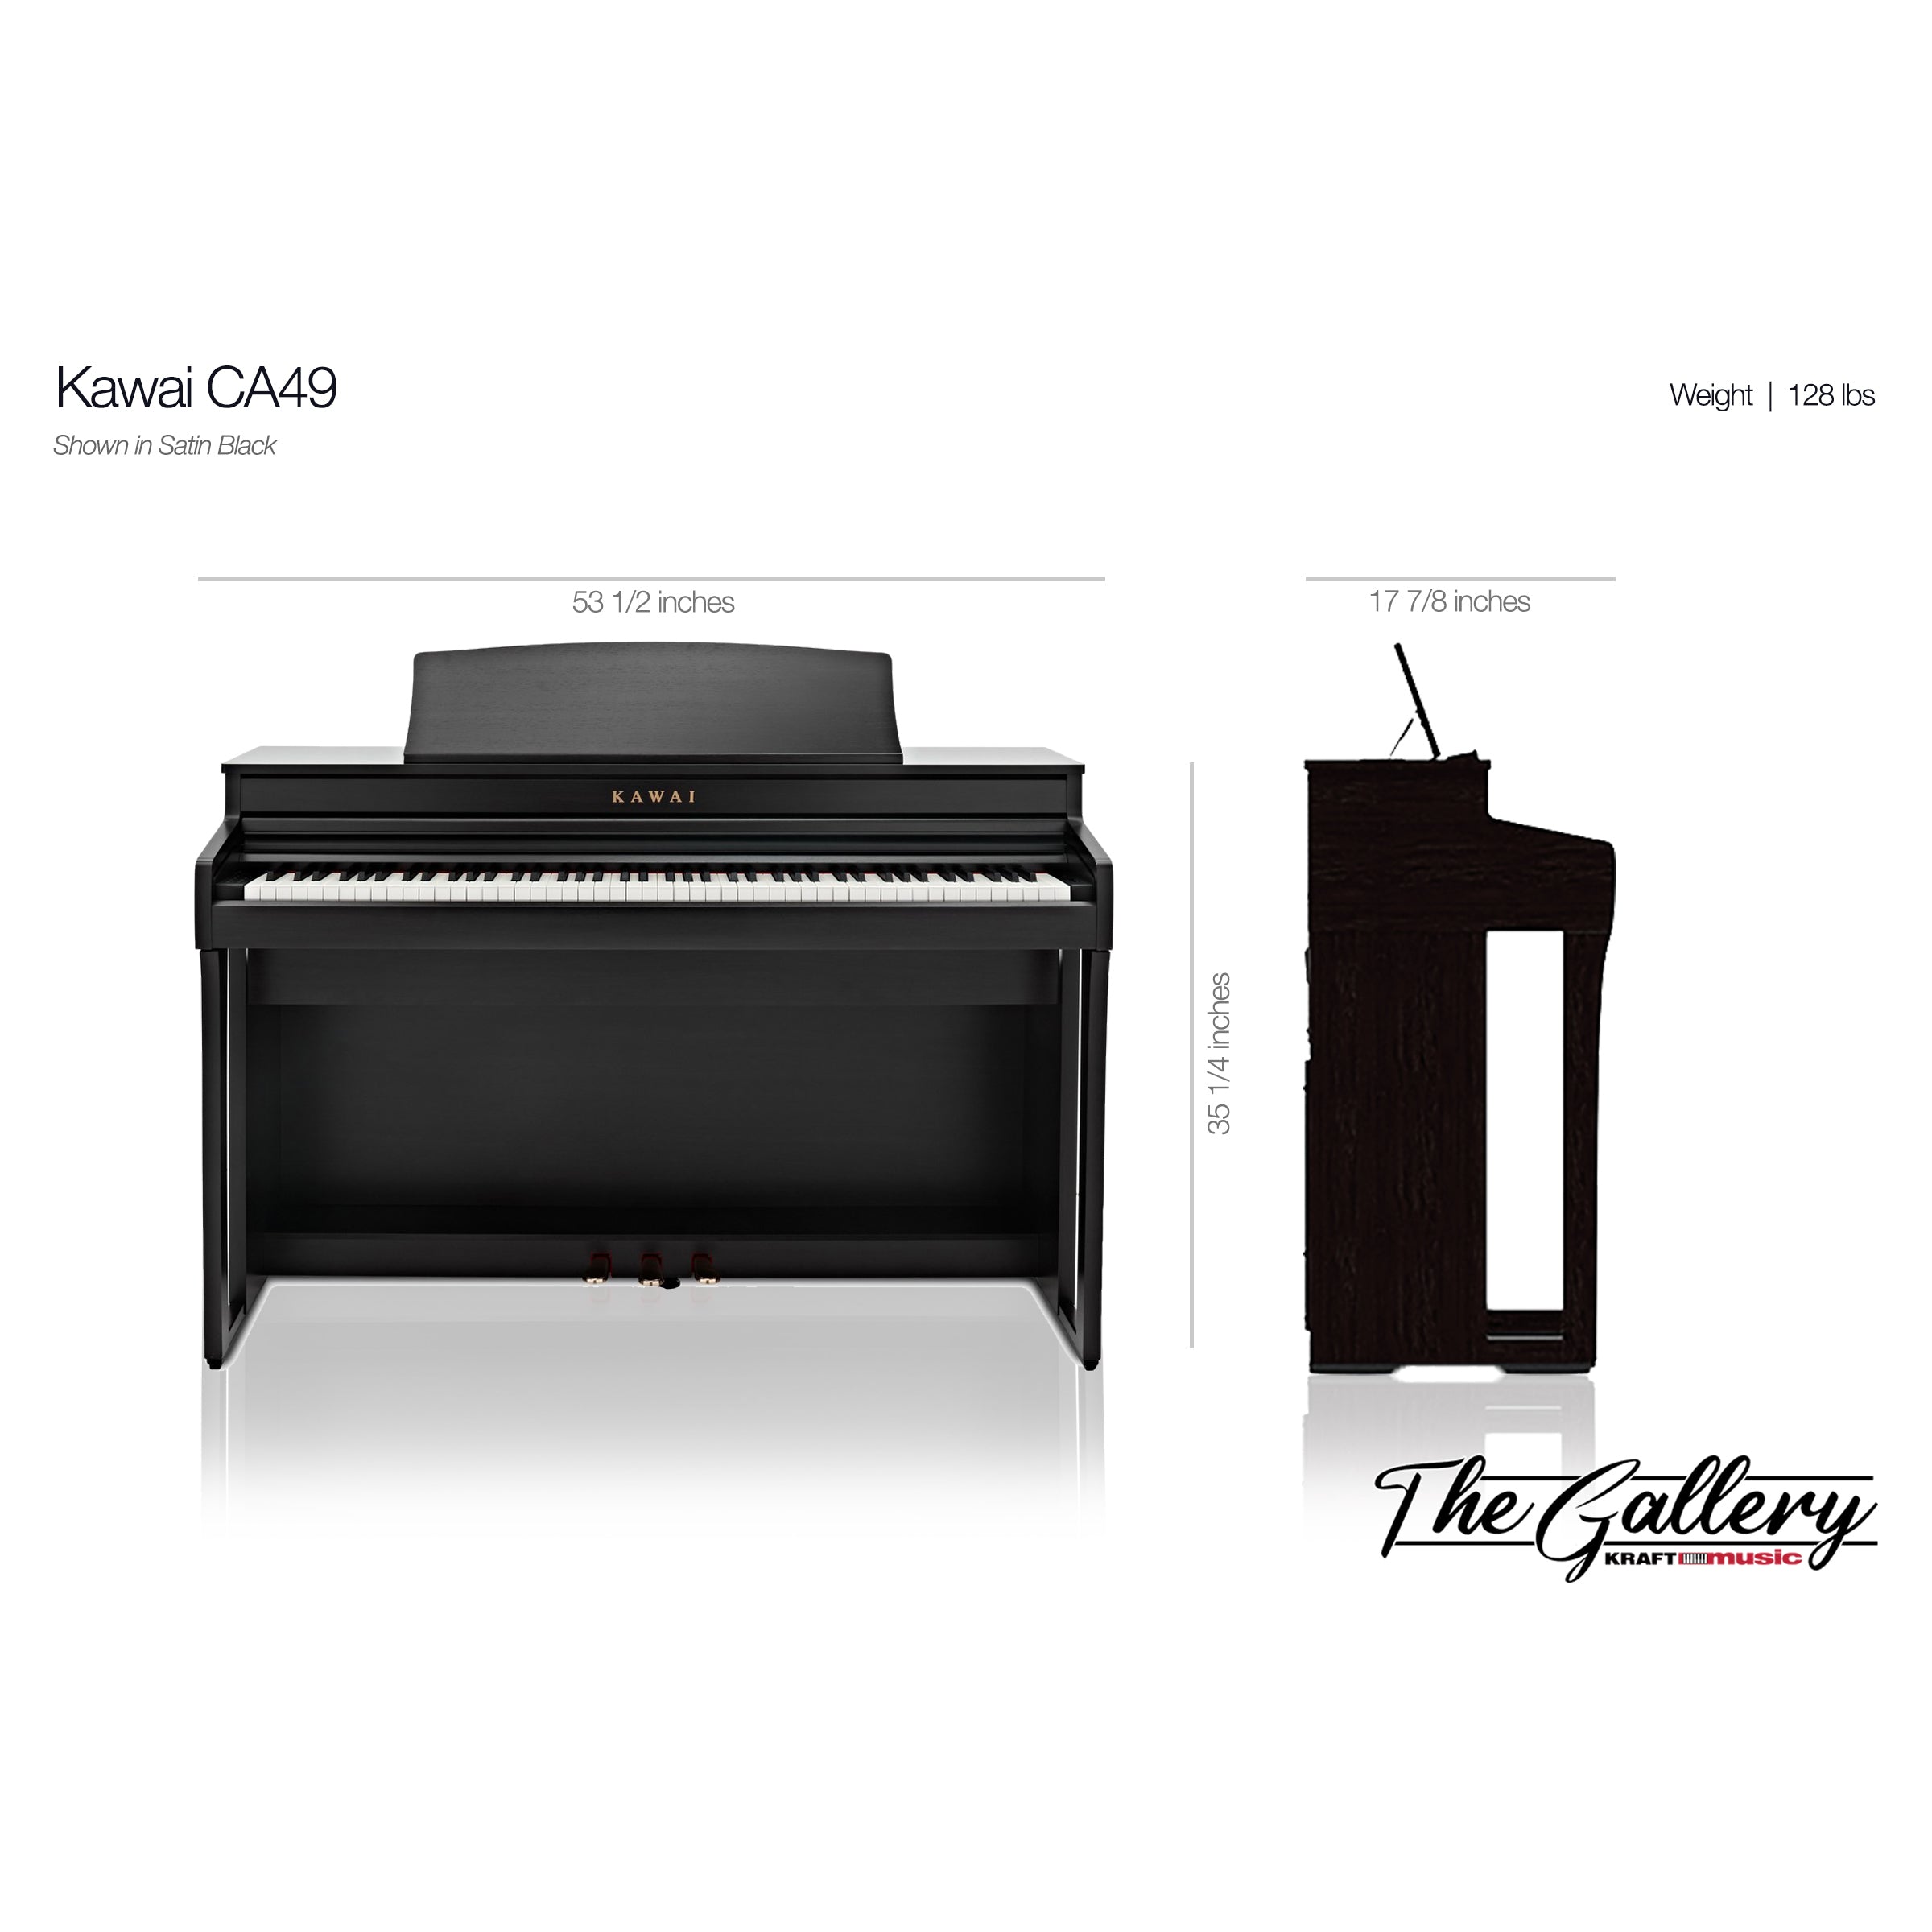 Kawai CA49 Digital Piano - Dimensions 